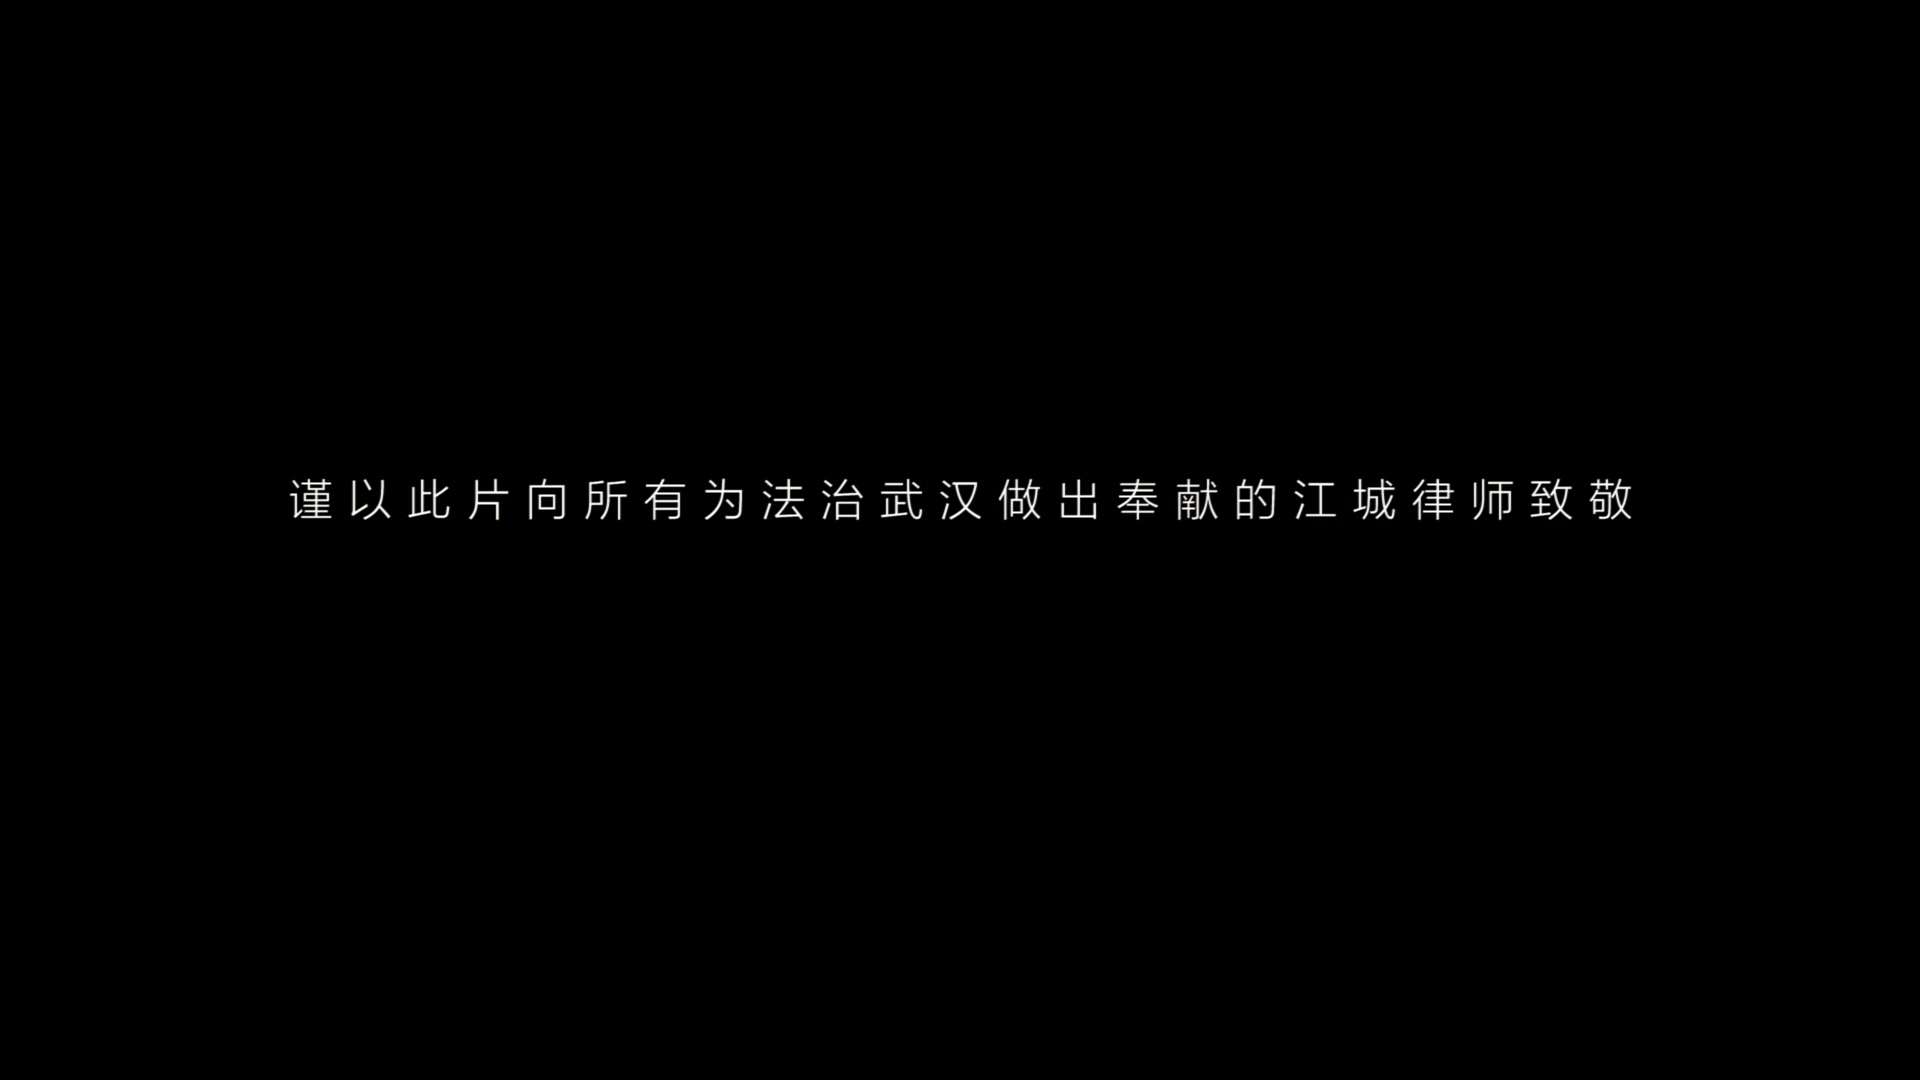 武汉律师协会40周年宣传片-9-15